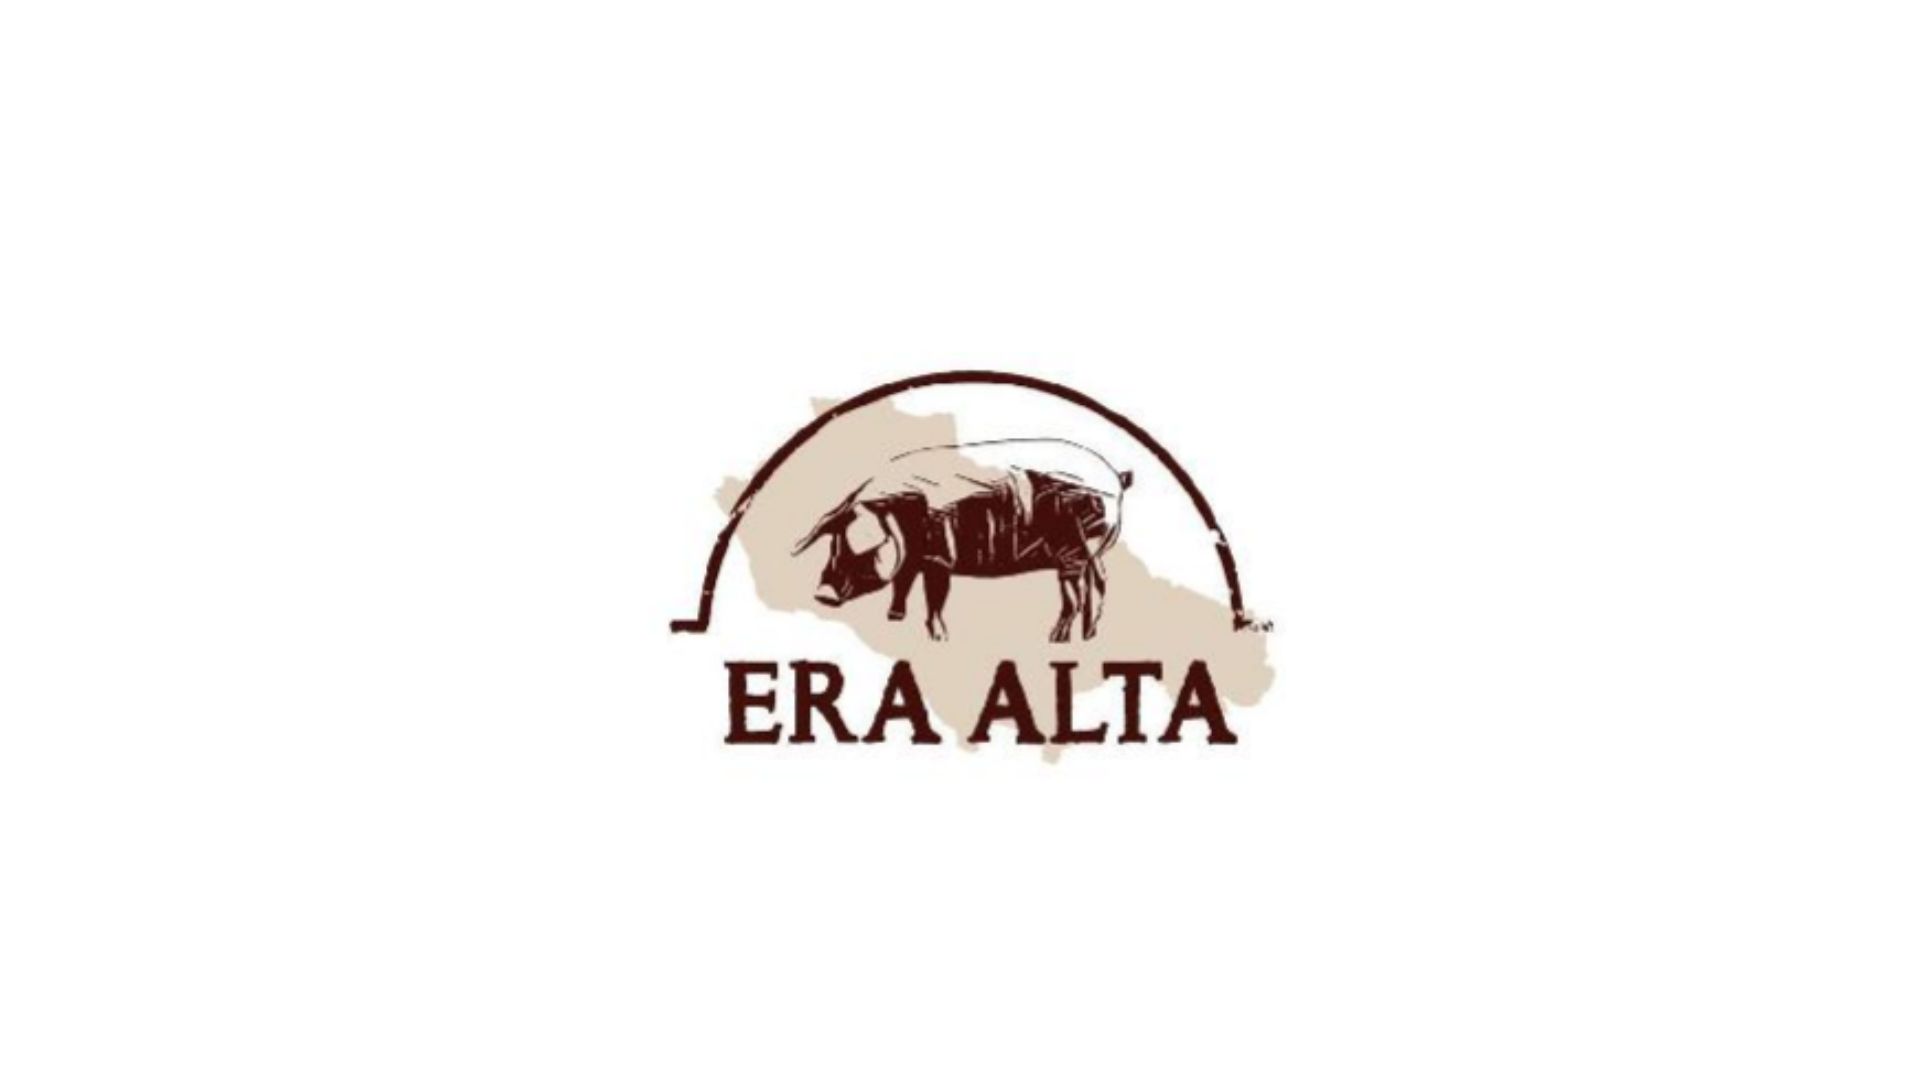 Nueva marca "ERA ALTA" registra una amplia gama de alimentos en Villanueva de Córdoba